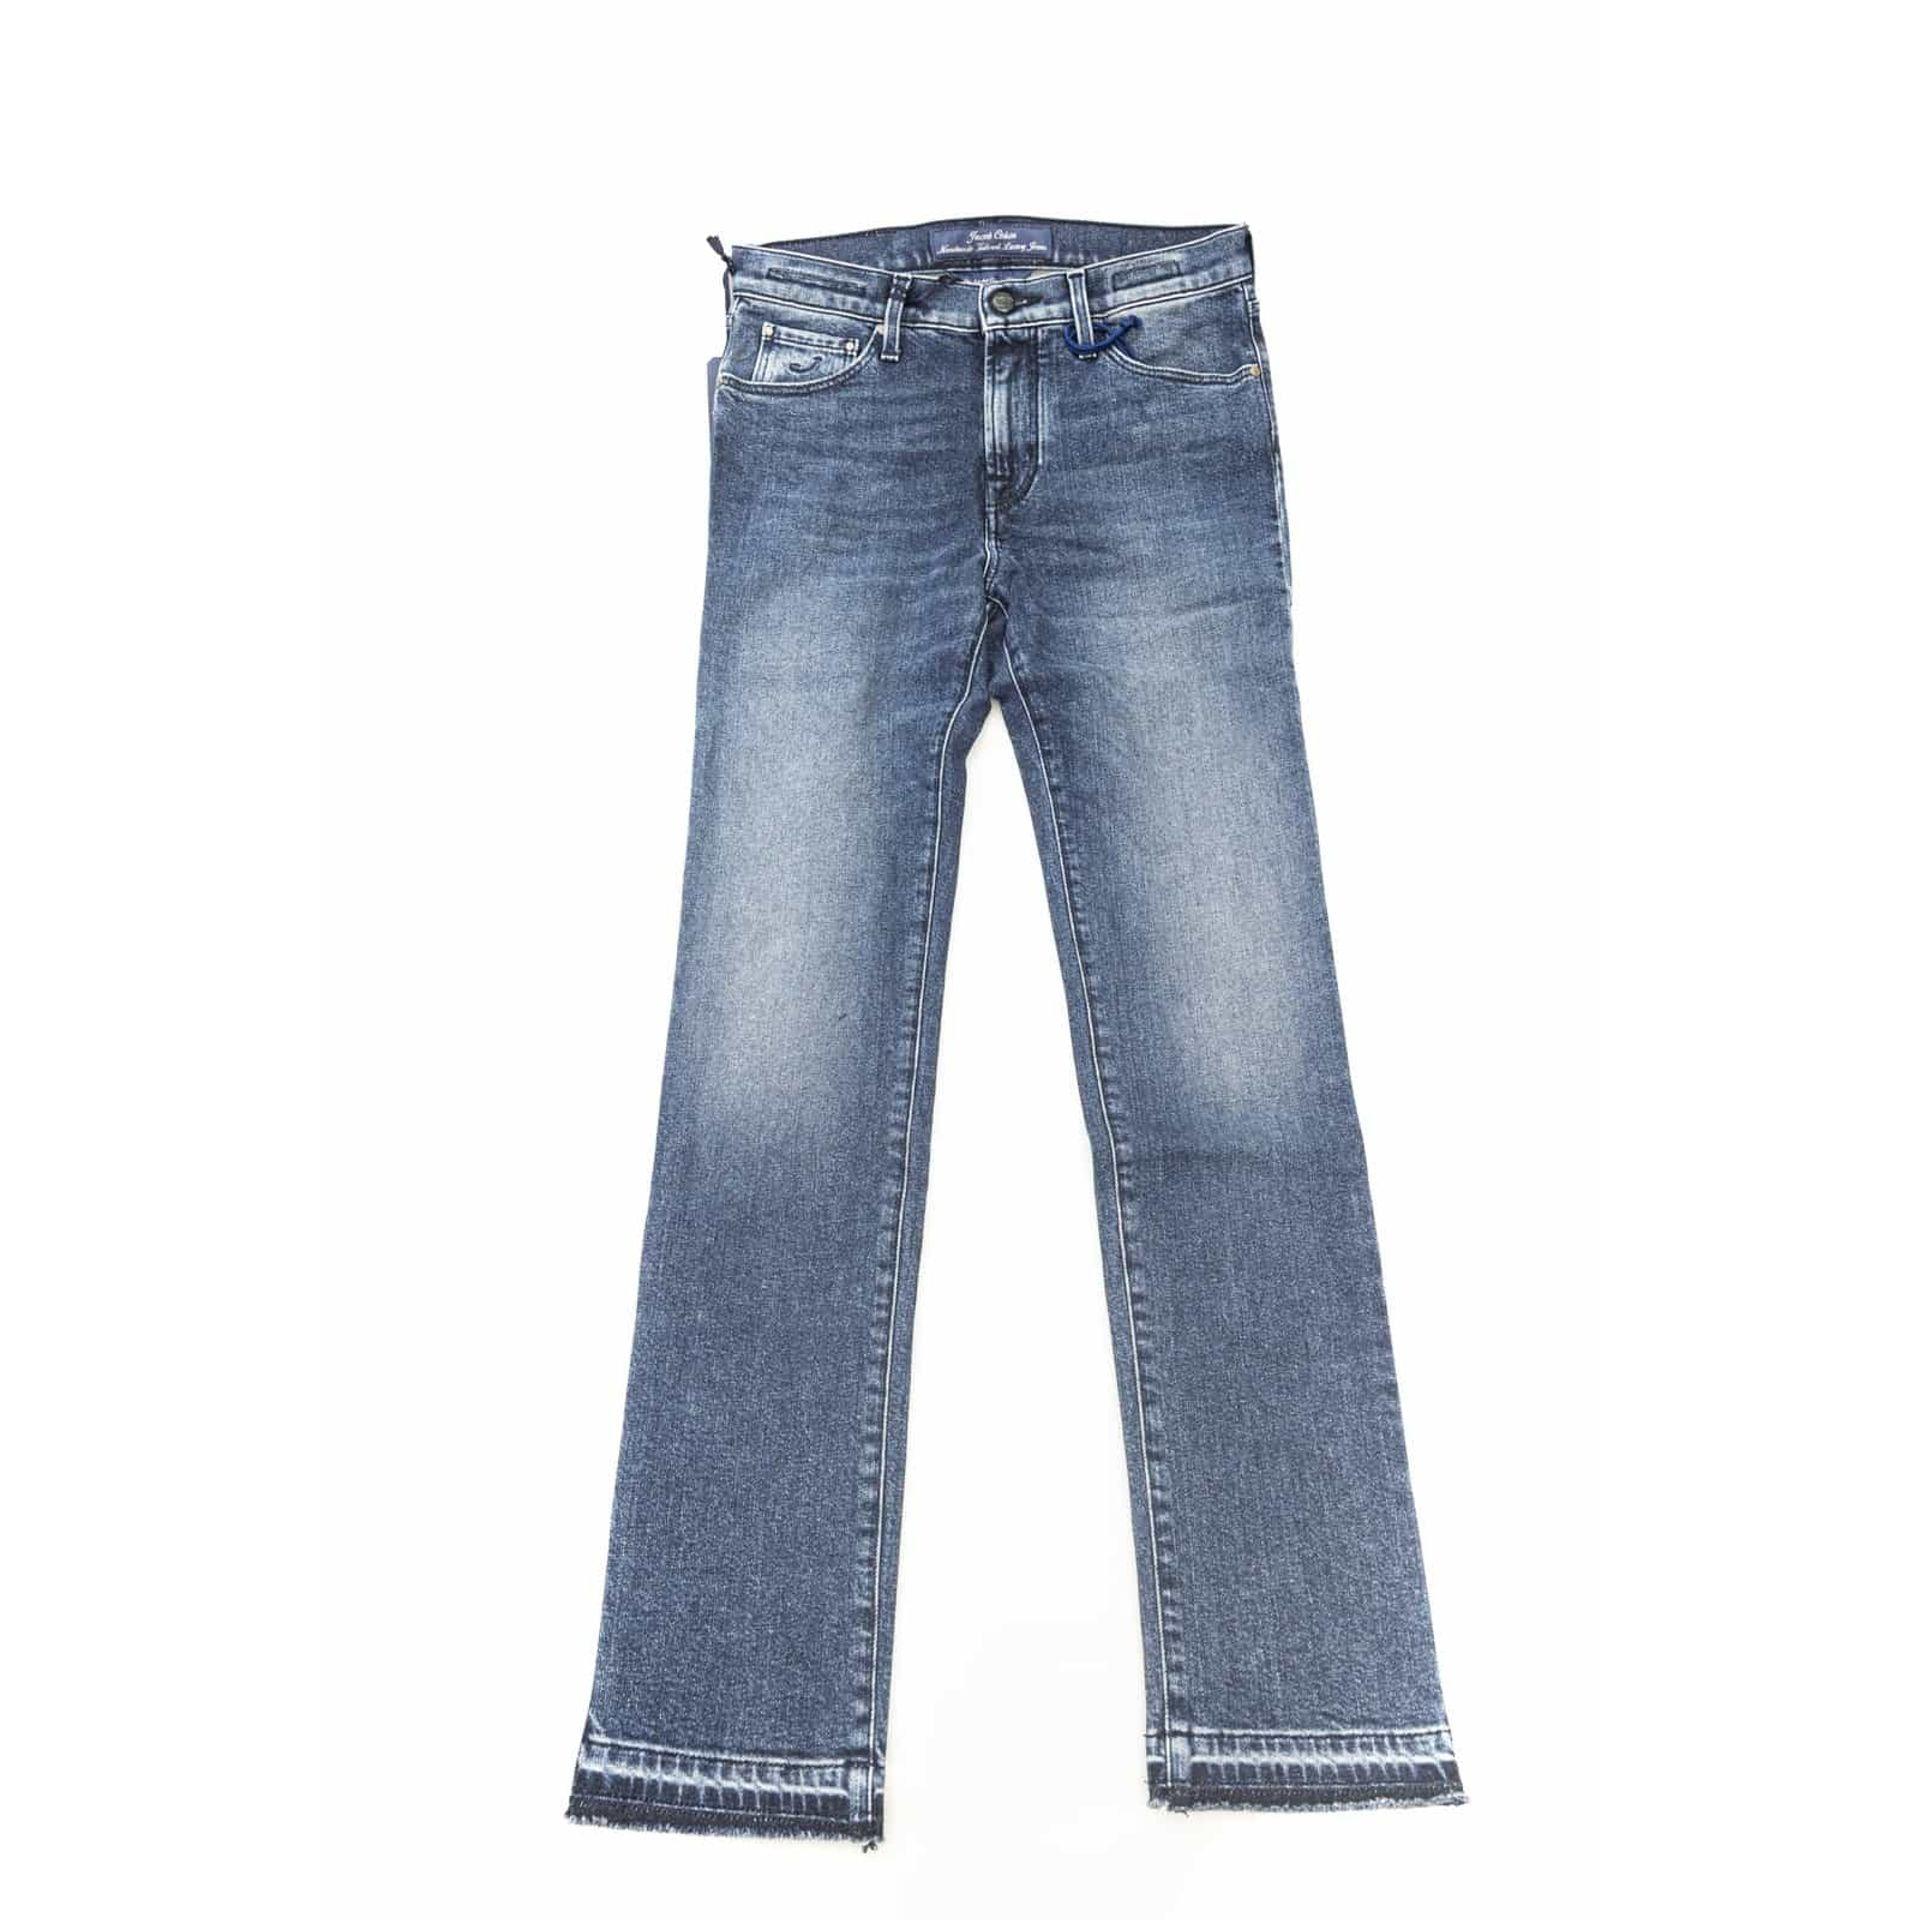 Jacob Cohen Jeans - TheNumber1Shop.com